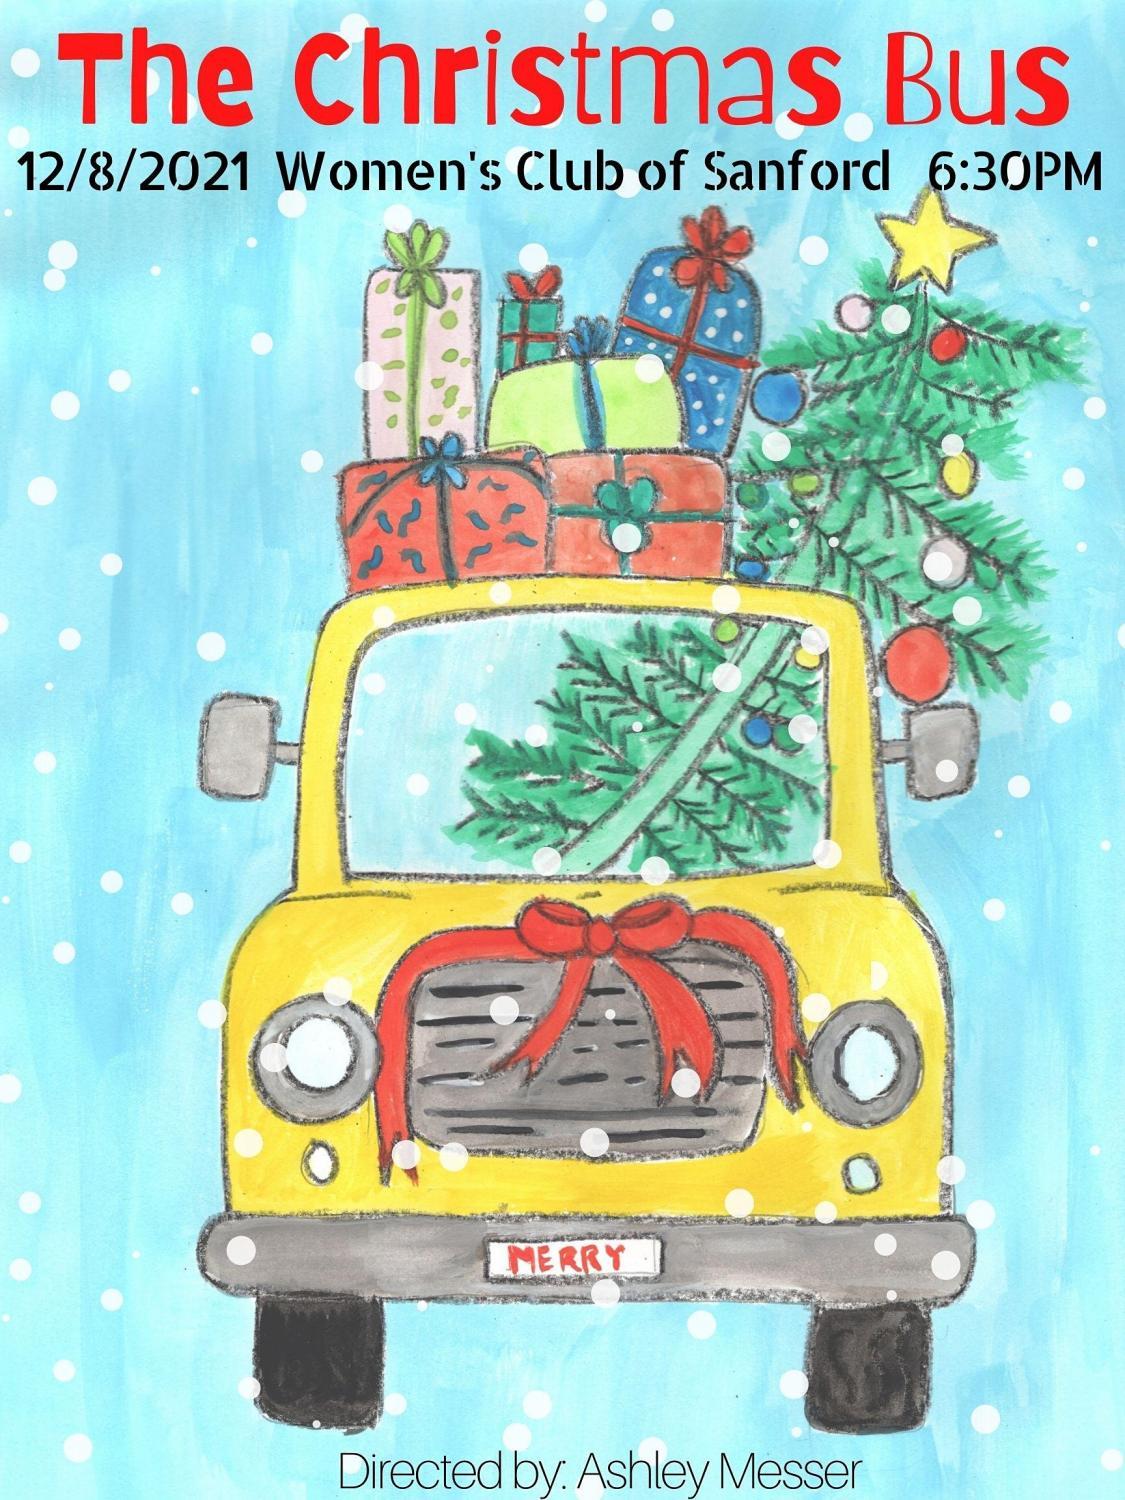 The Christmas Bus Play